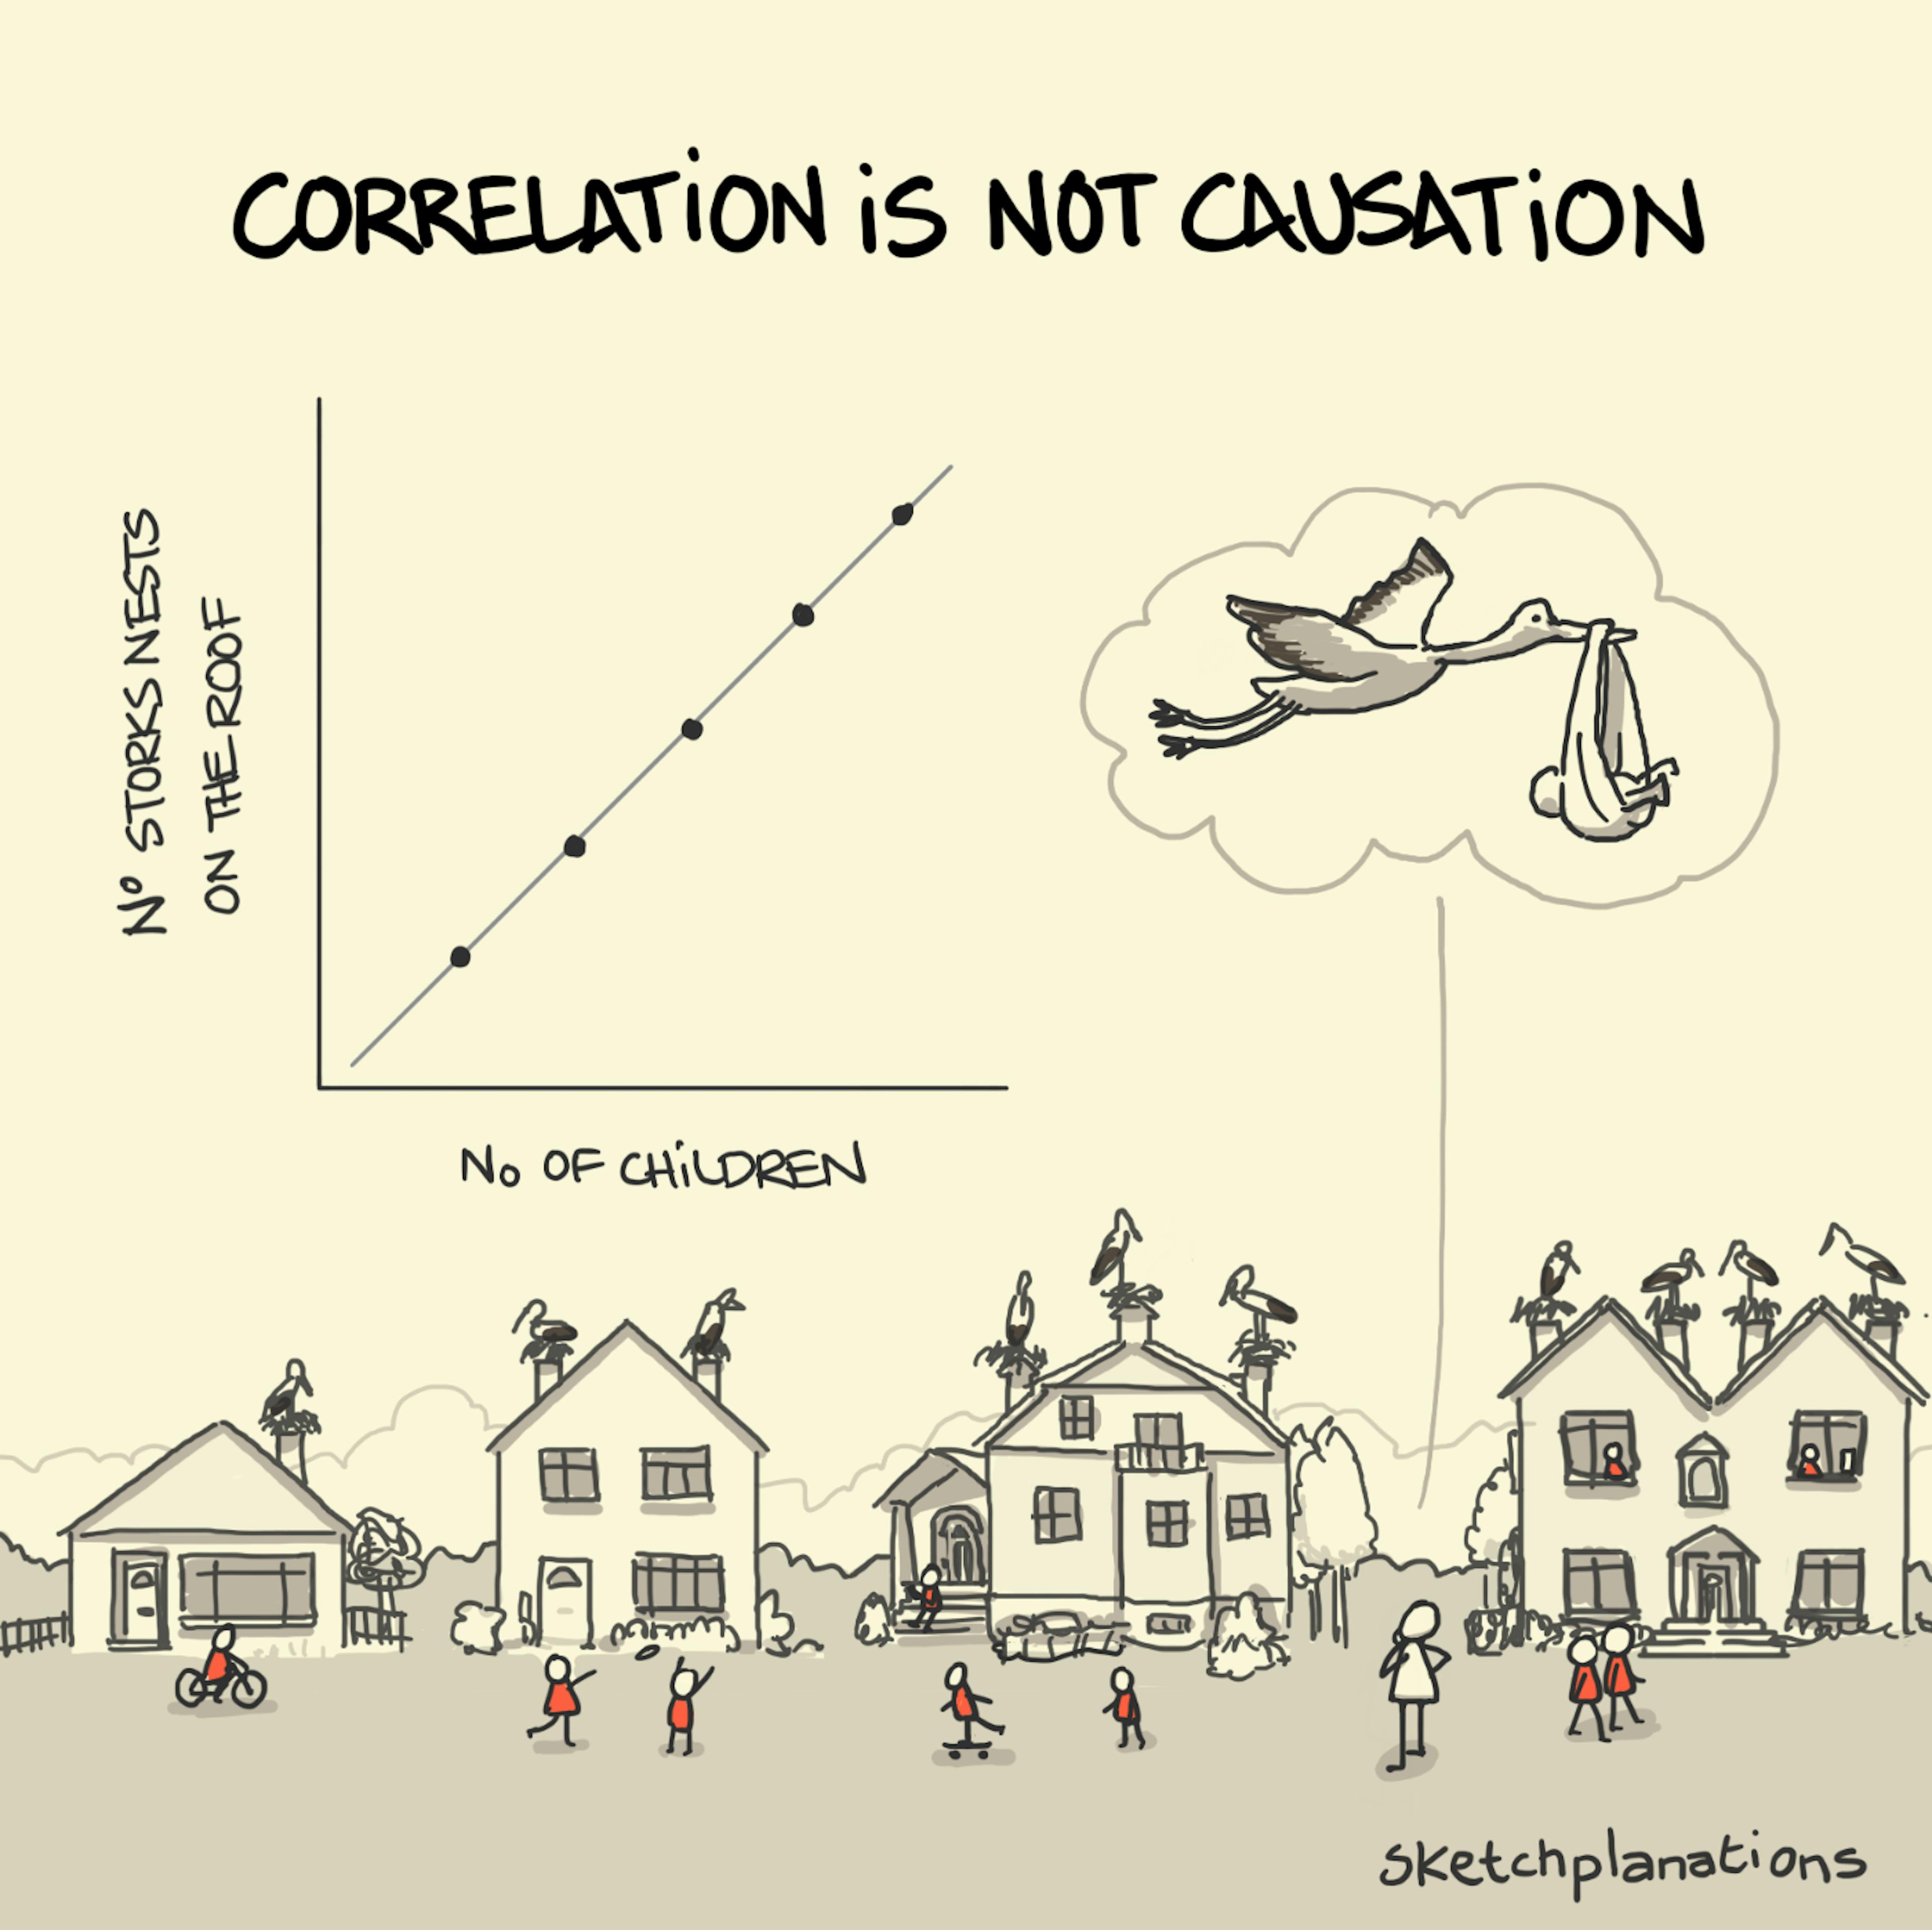 La causalité n'est pas une corrélation - Sketchplanations